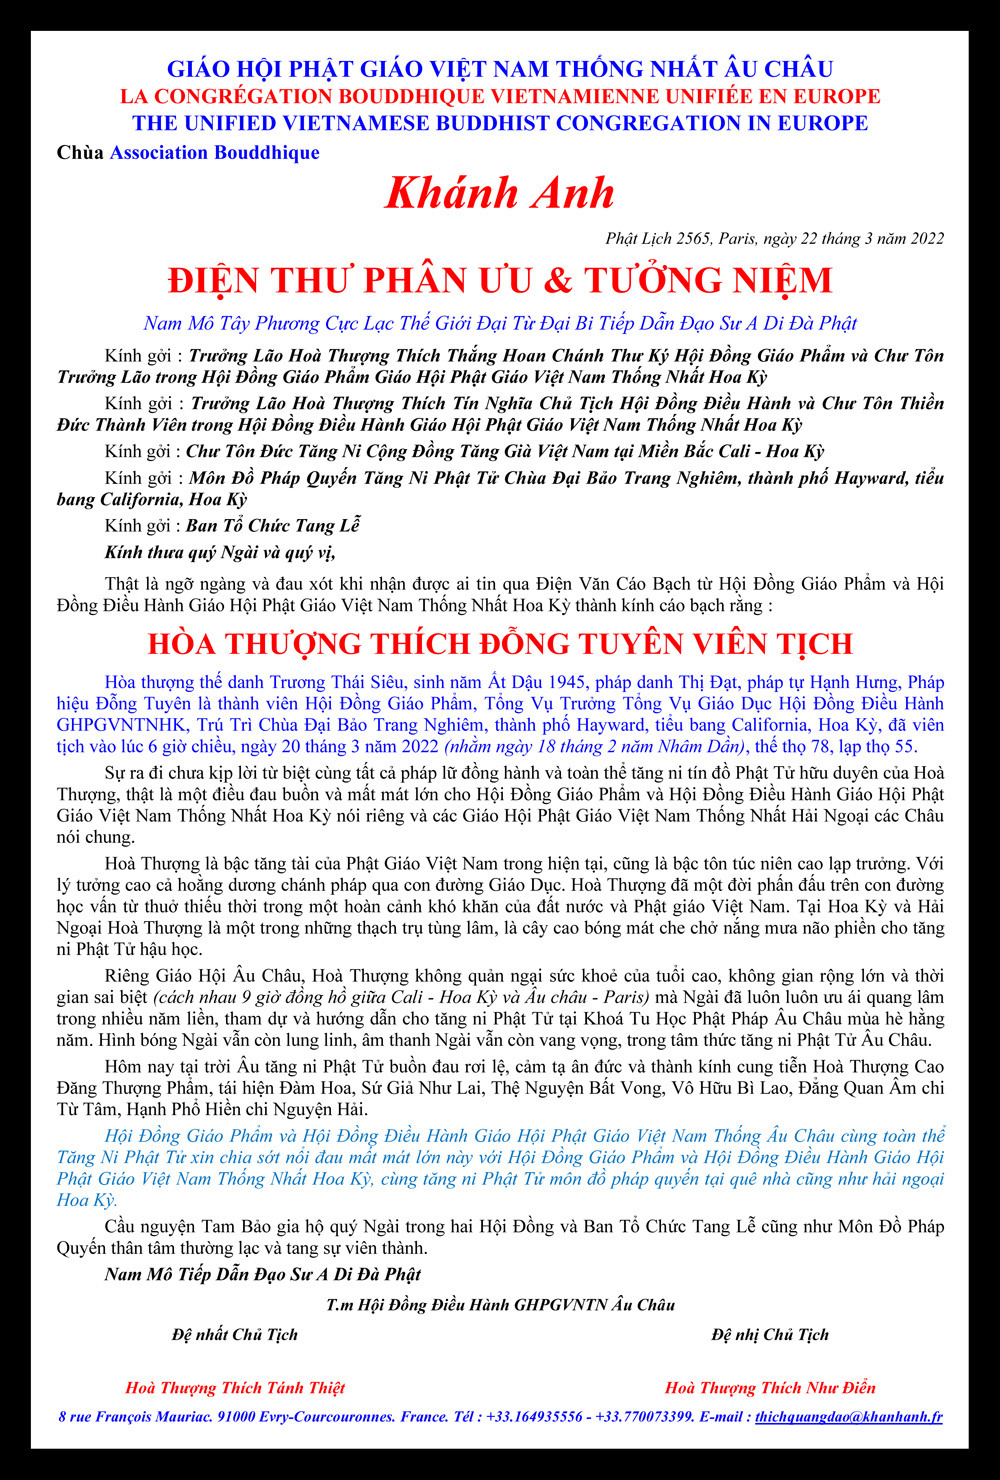 Dien thu Phan Uu Hoa Thuong Thich Dong Tuyen_gh au chau